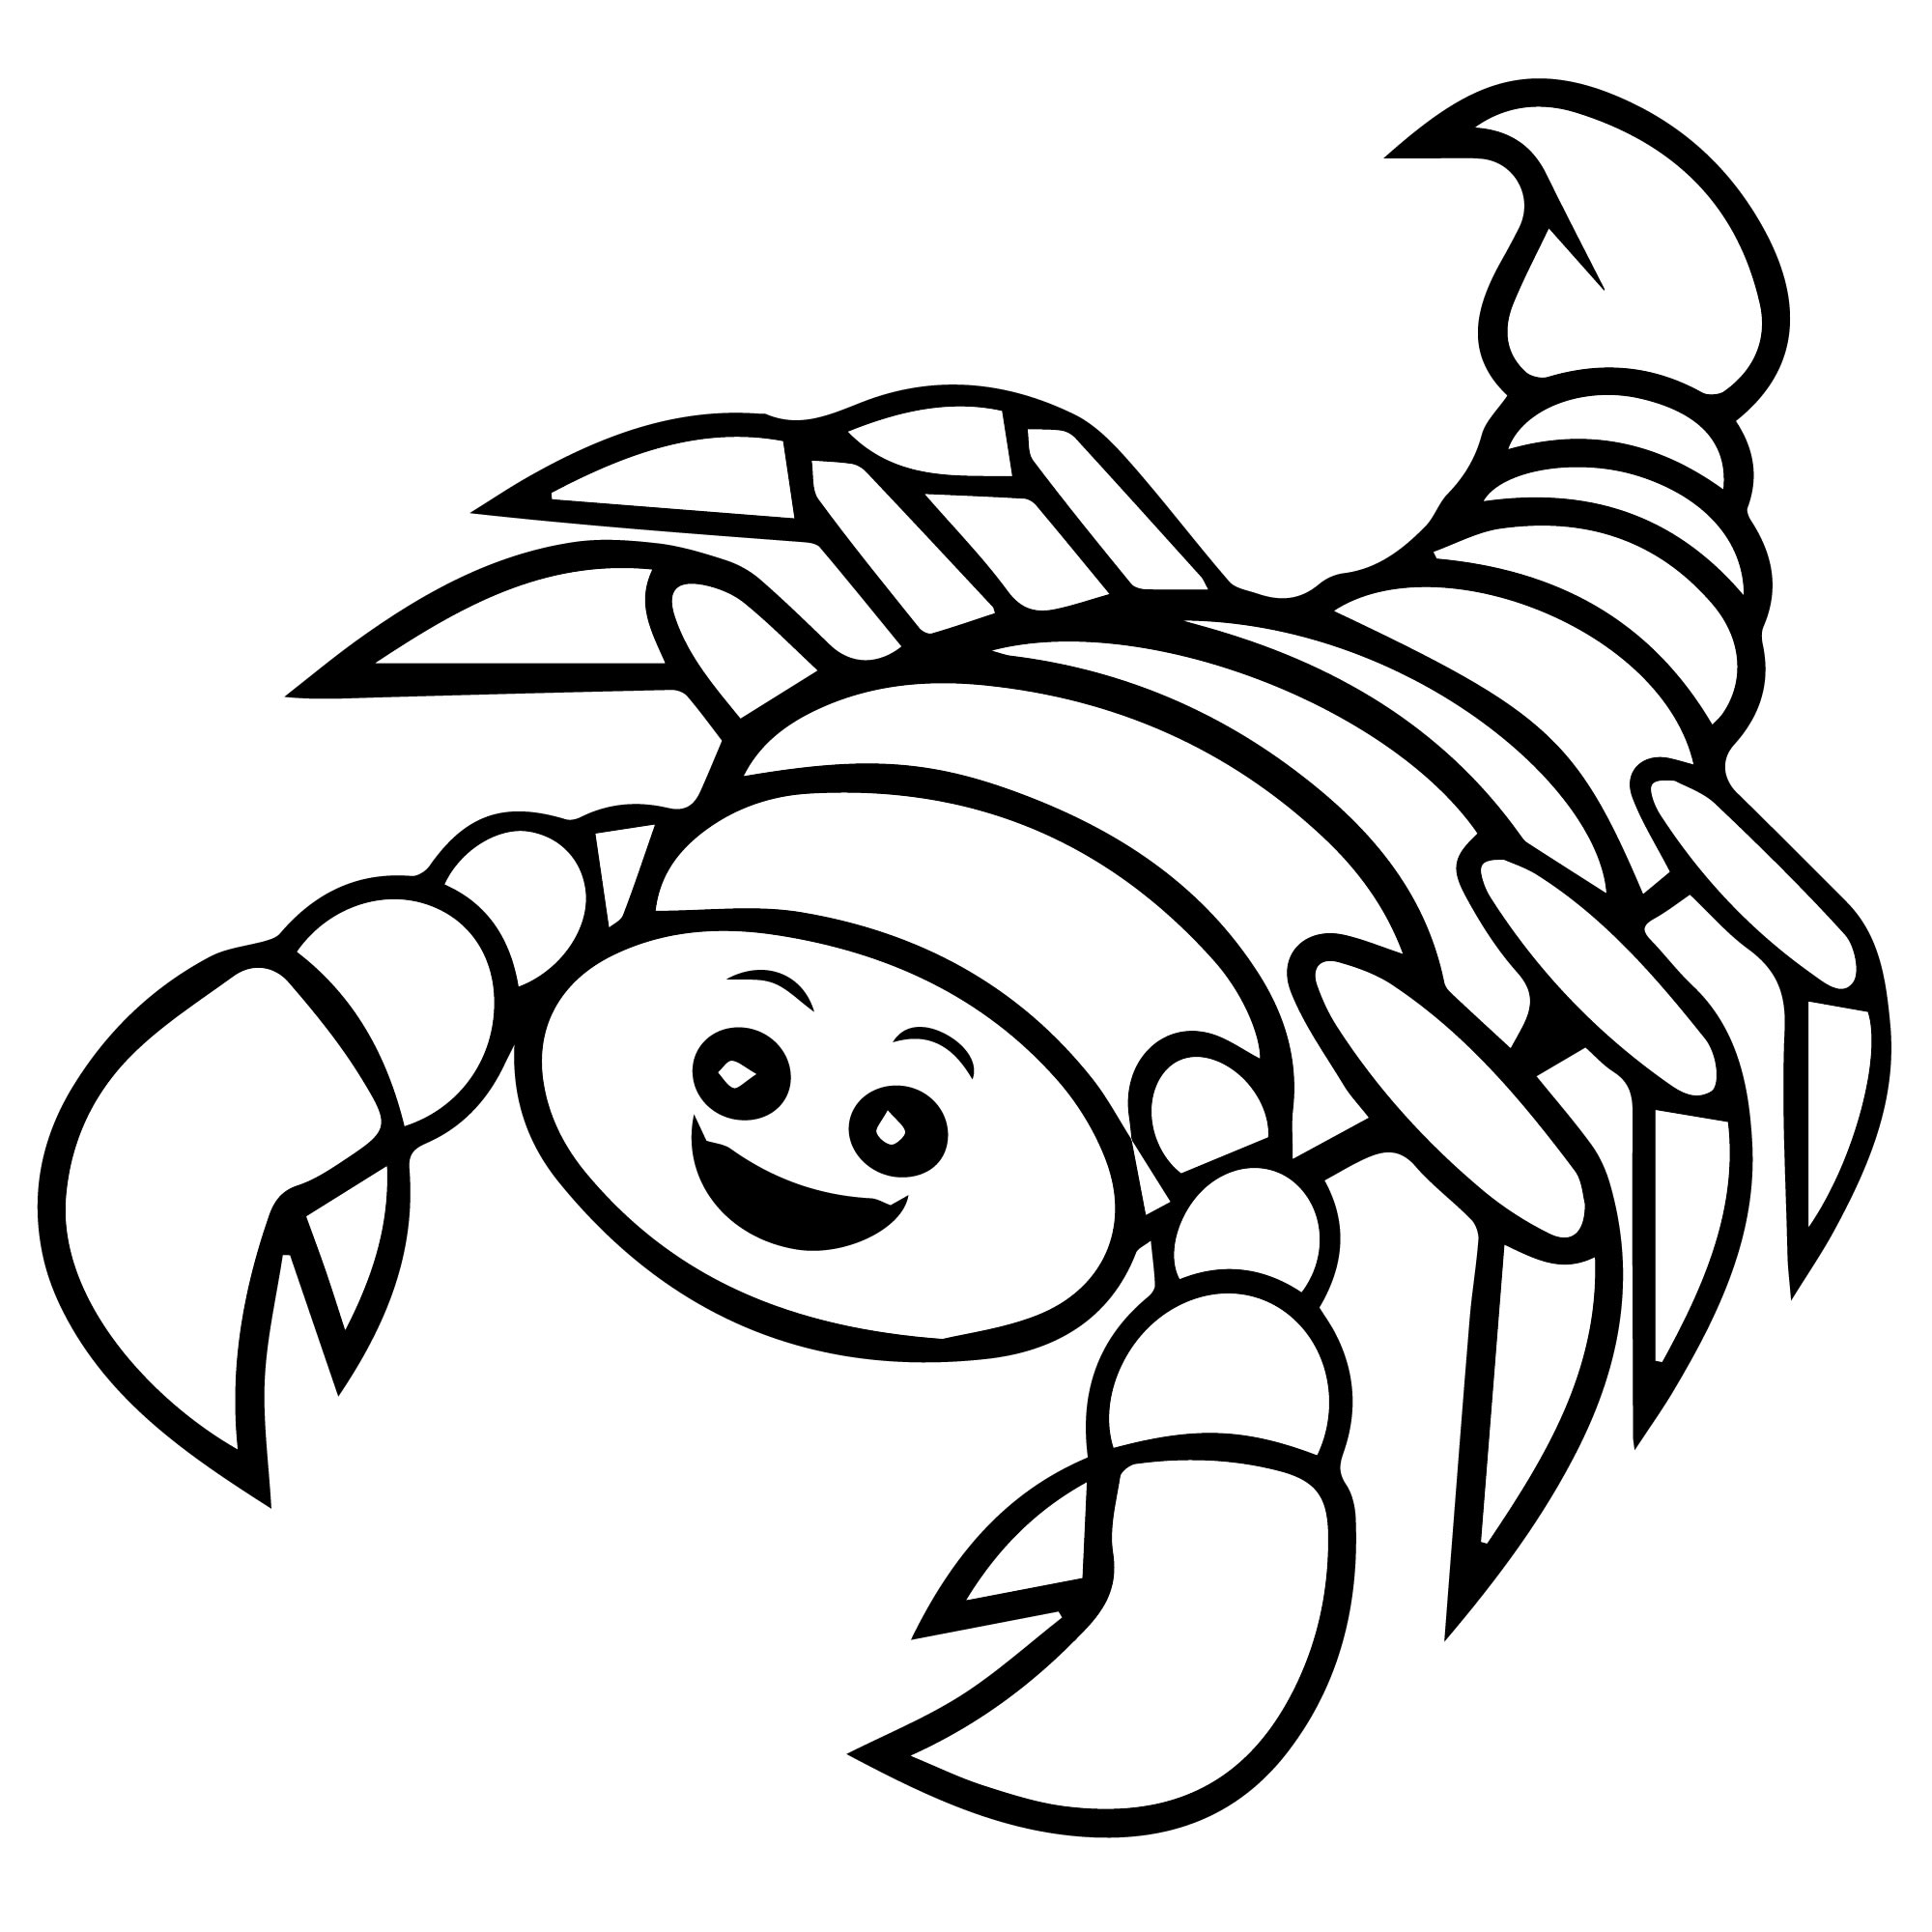 Рисунок скорпиона: векторные изображения и иллюстрации, которые можно скачать бесплатно | Freepik